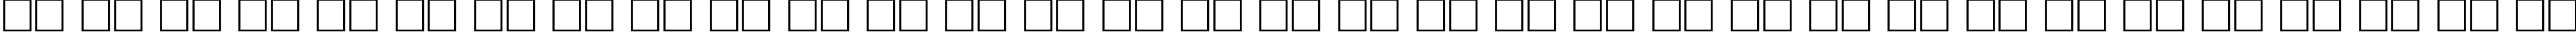 Пример написания русского алфавита шрифтом Souvenir BoldItalic